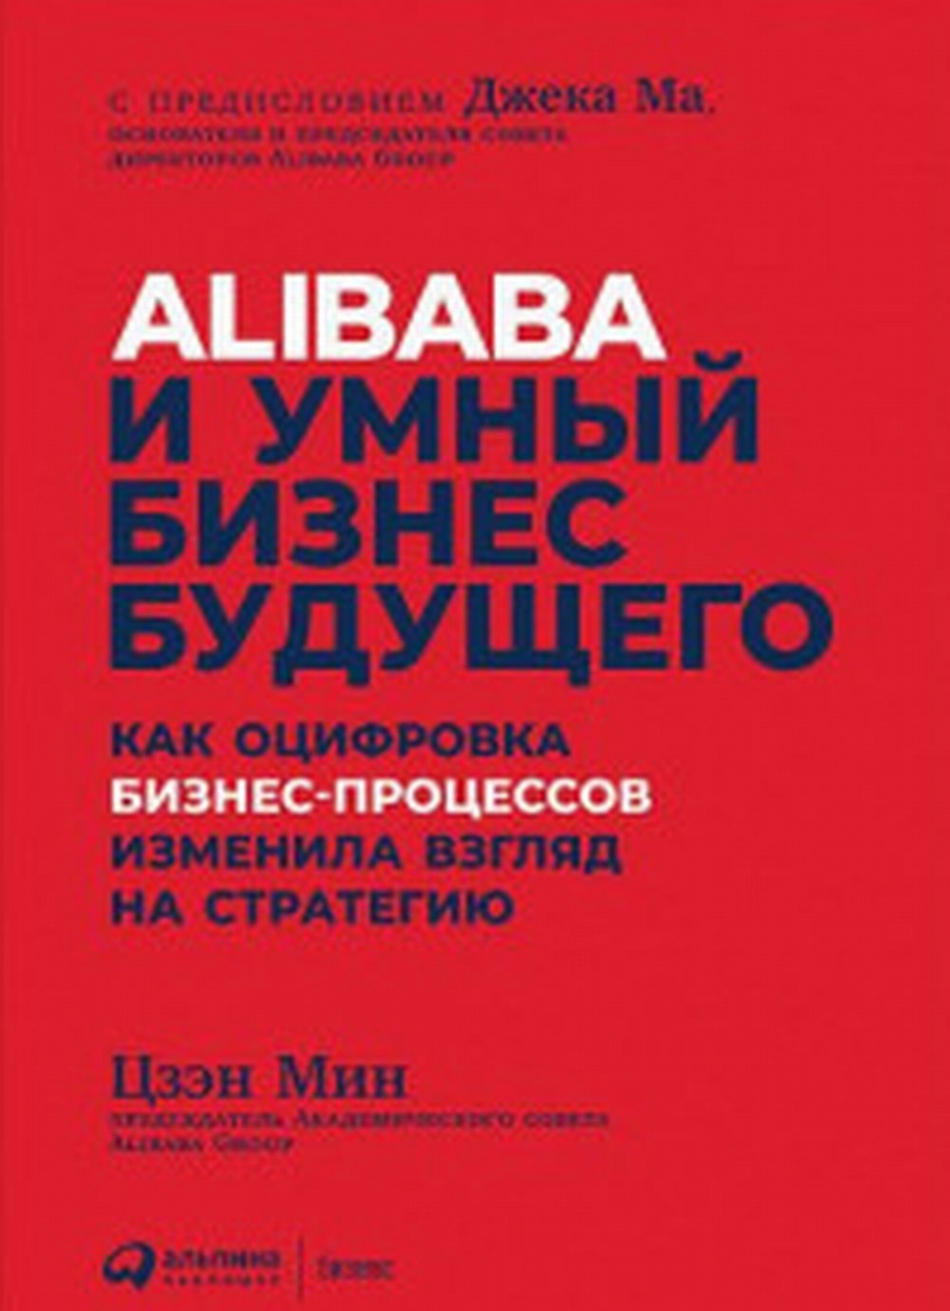  . Alibaba     